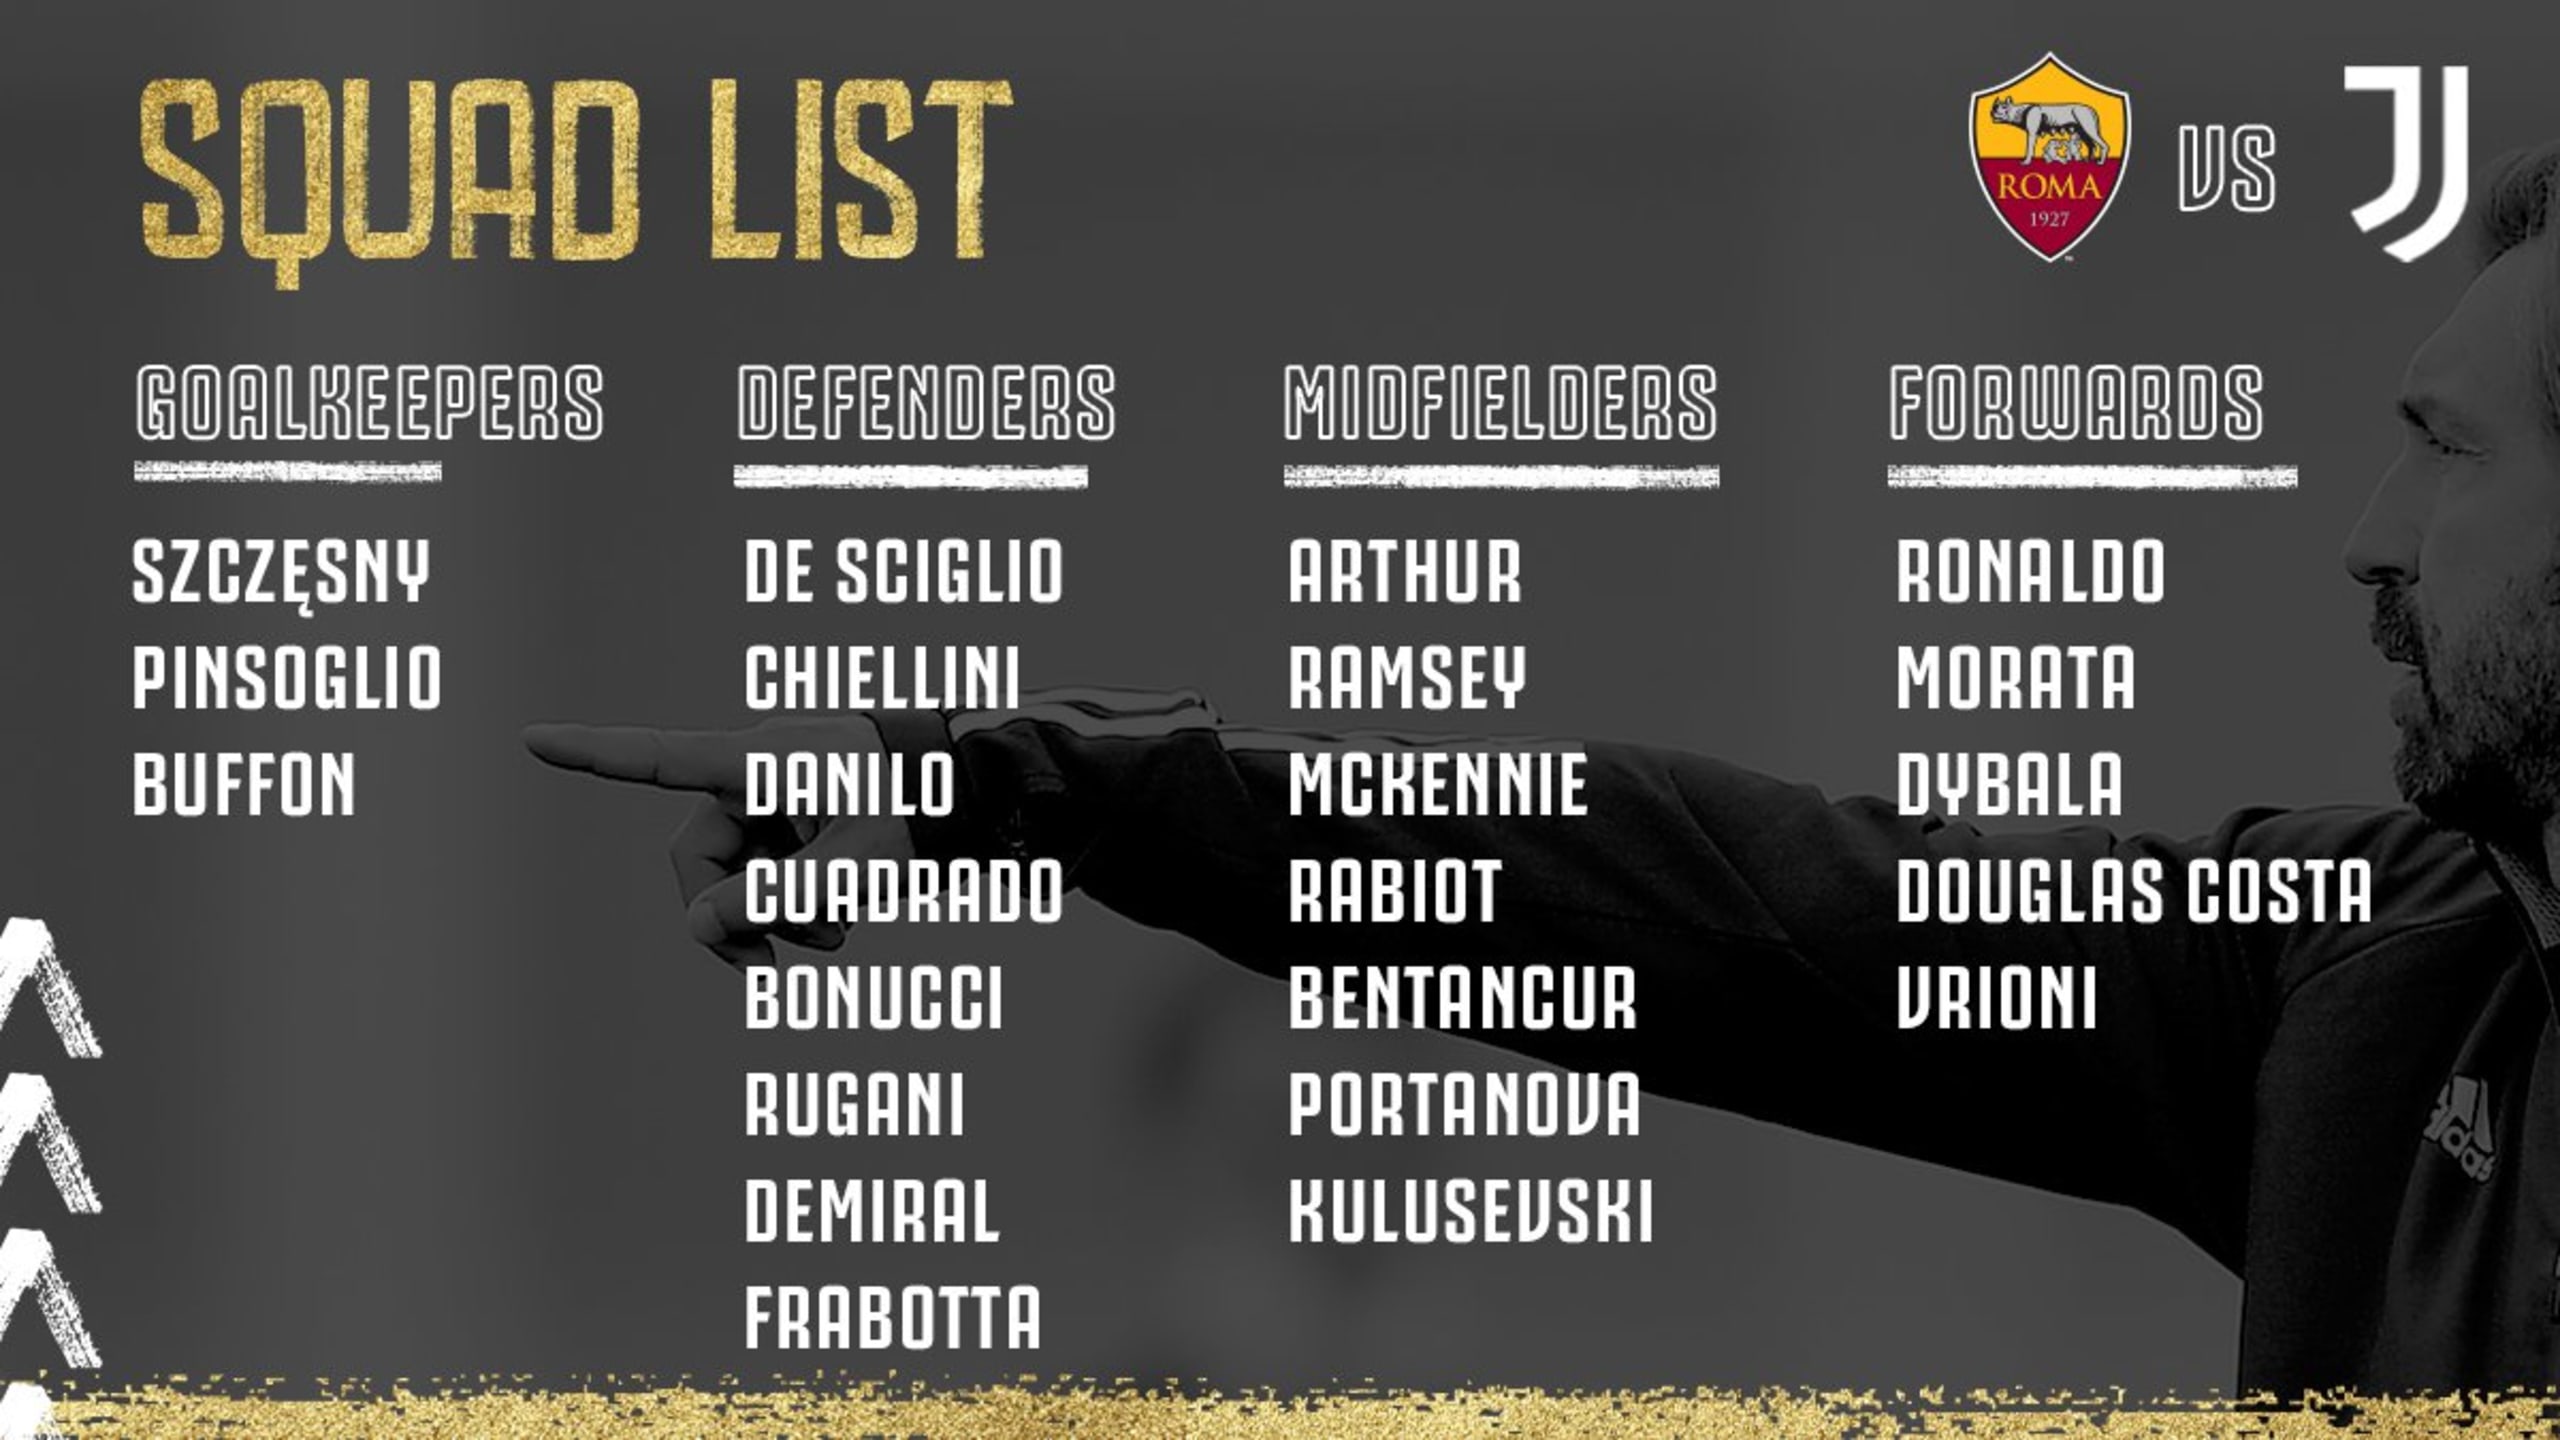 لیست بازیکنان دعوت شده برای بازی با رم 